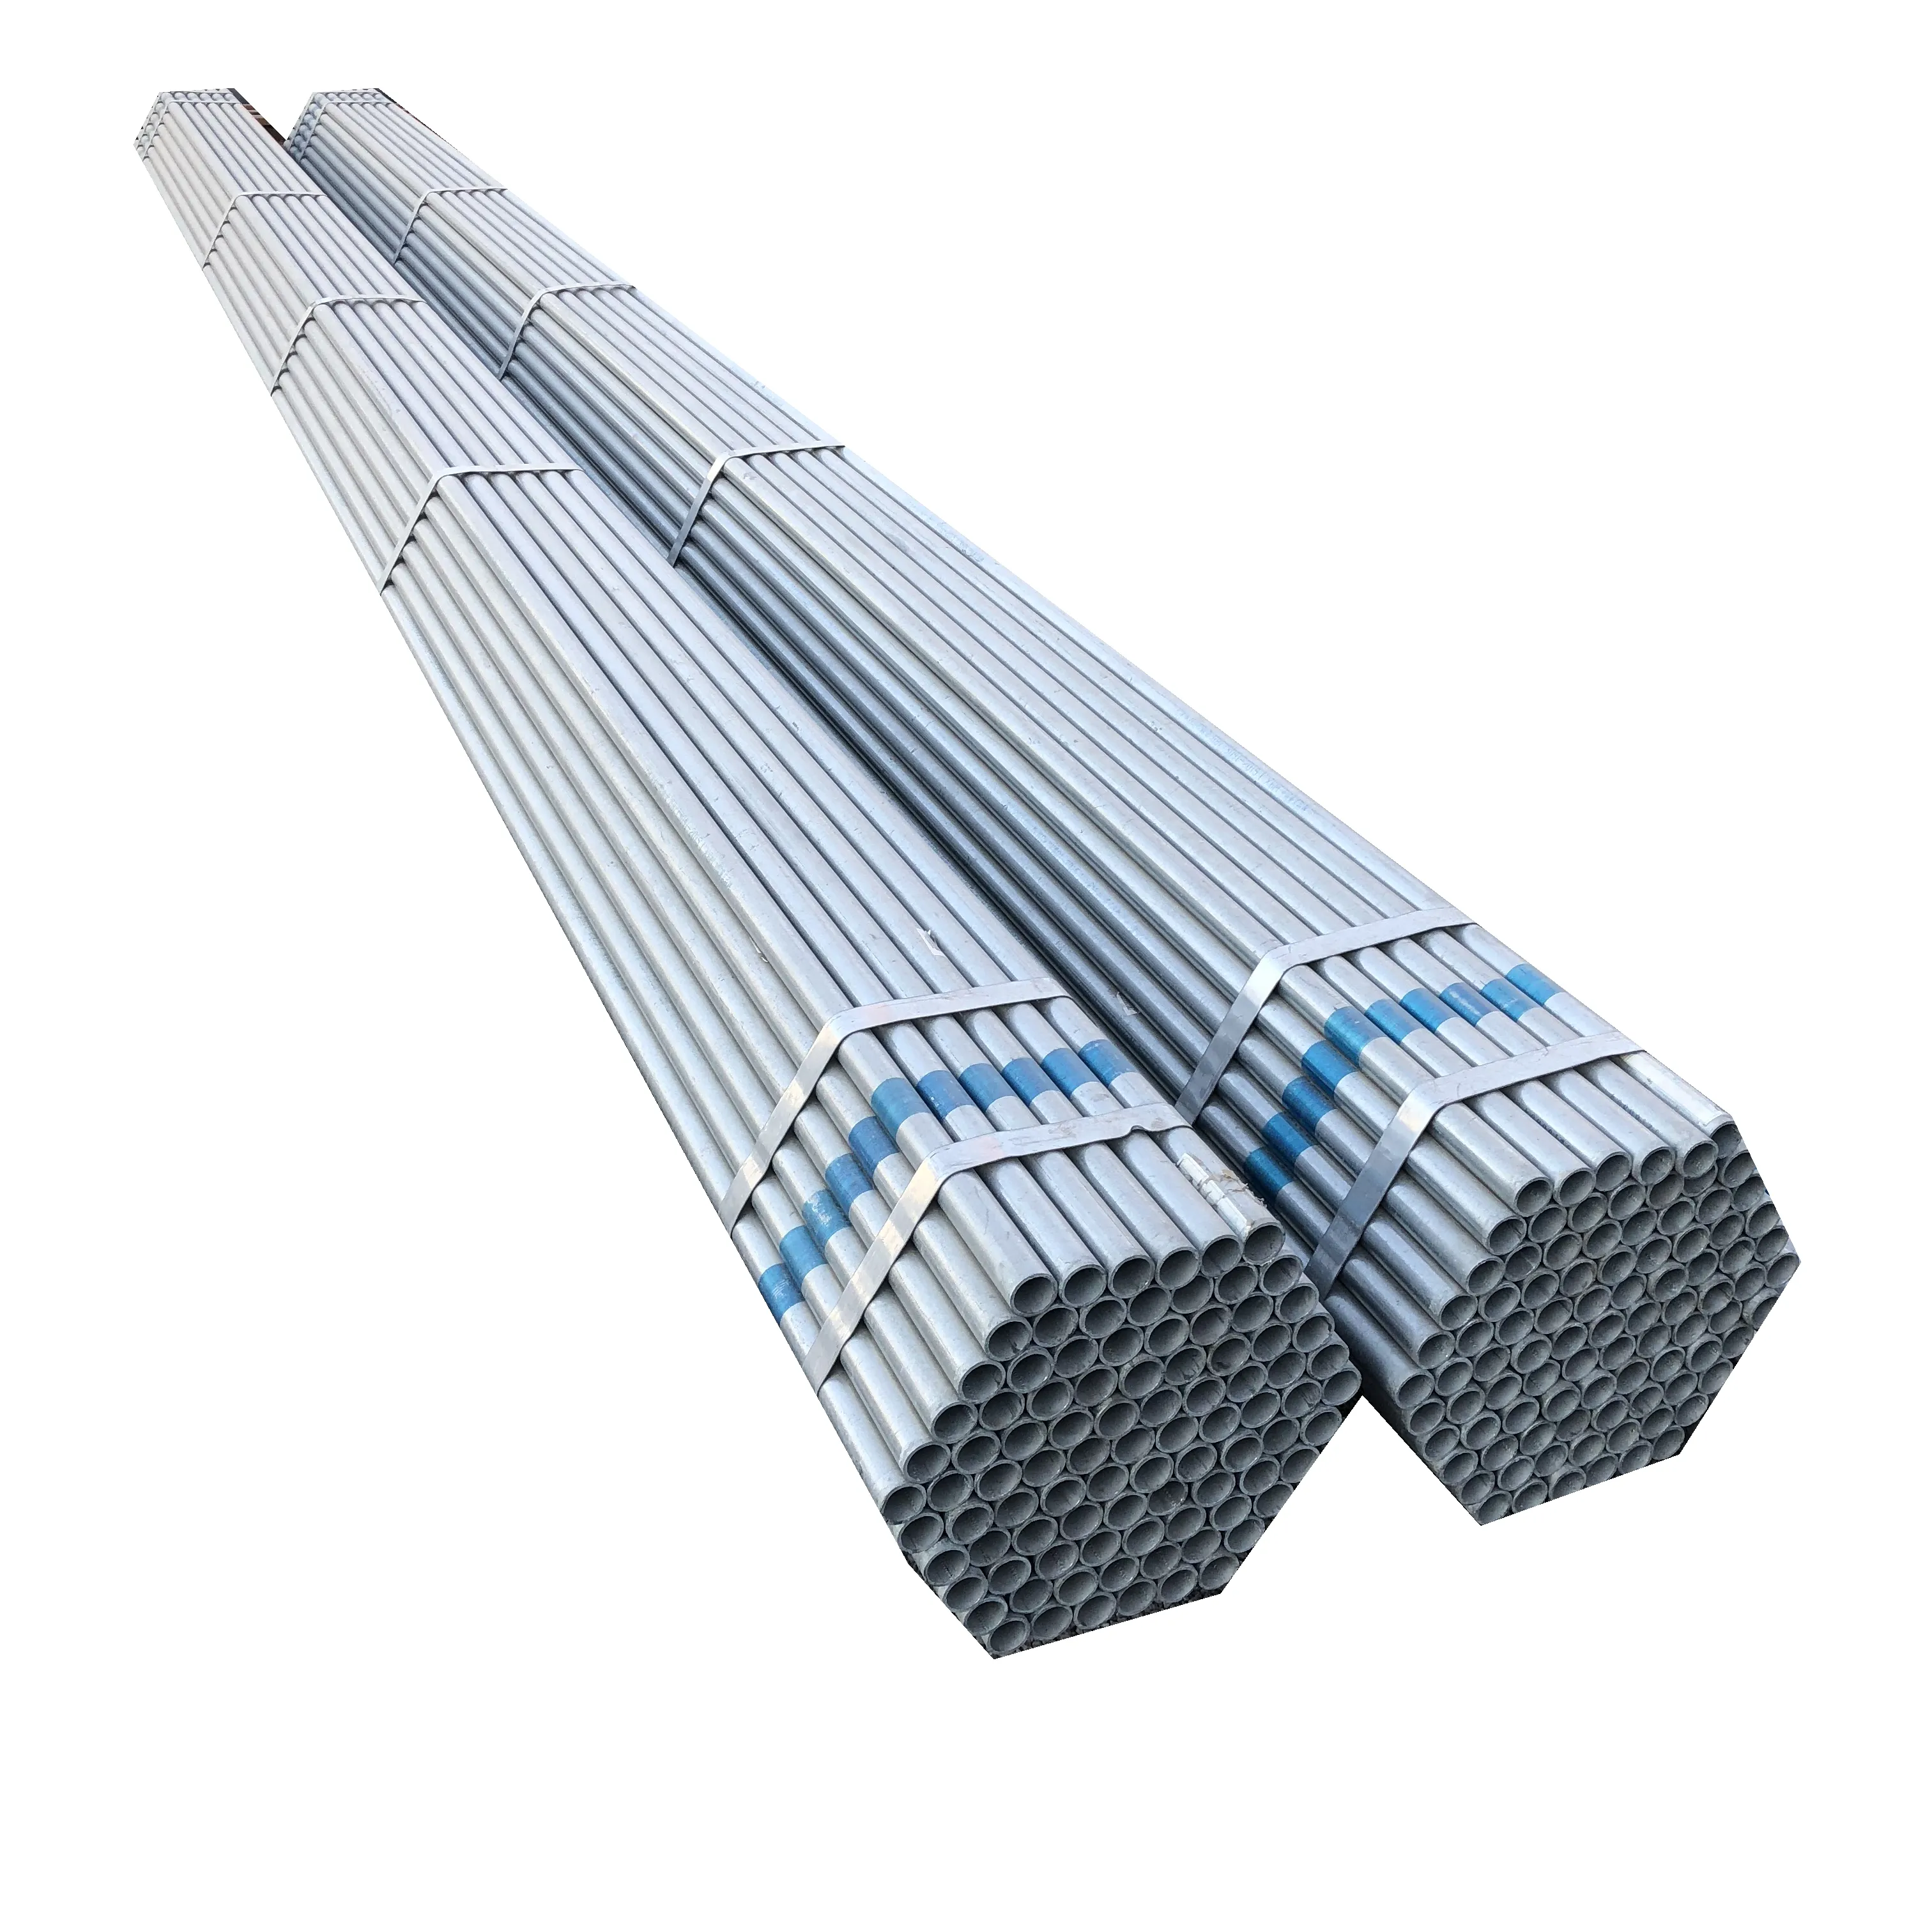 Gi tubo d'acciaio Pre tubo zincato a caldo tubo d'acciaio rotondo zincato per la costruzione